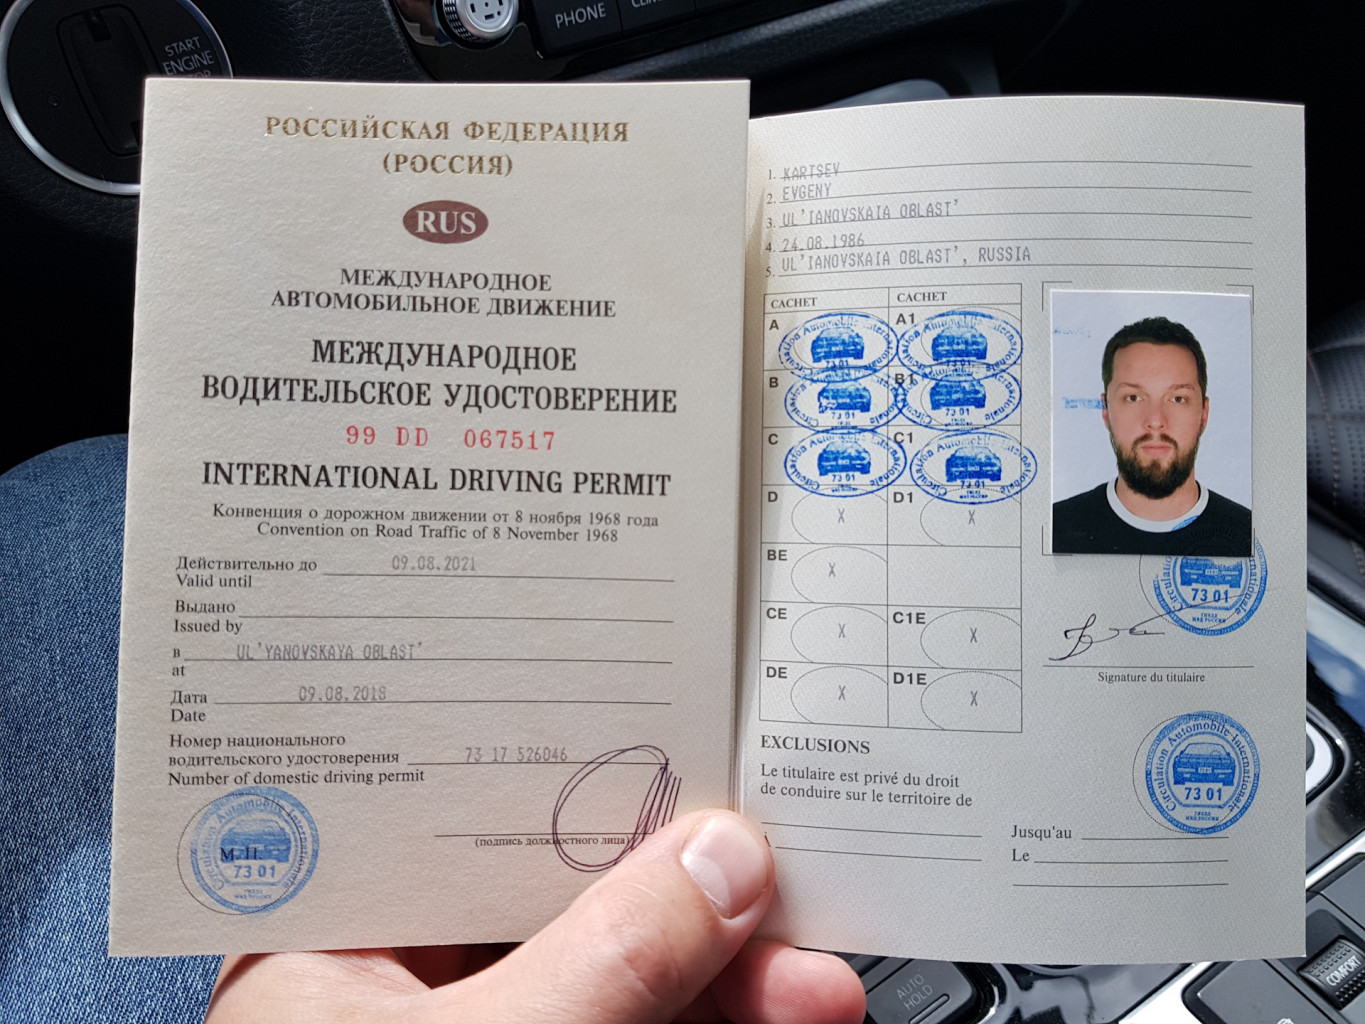 Получение международного водительского удостоверения